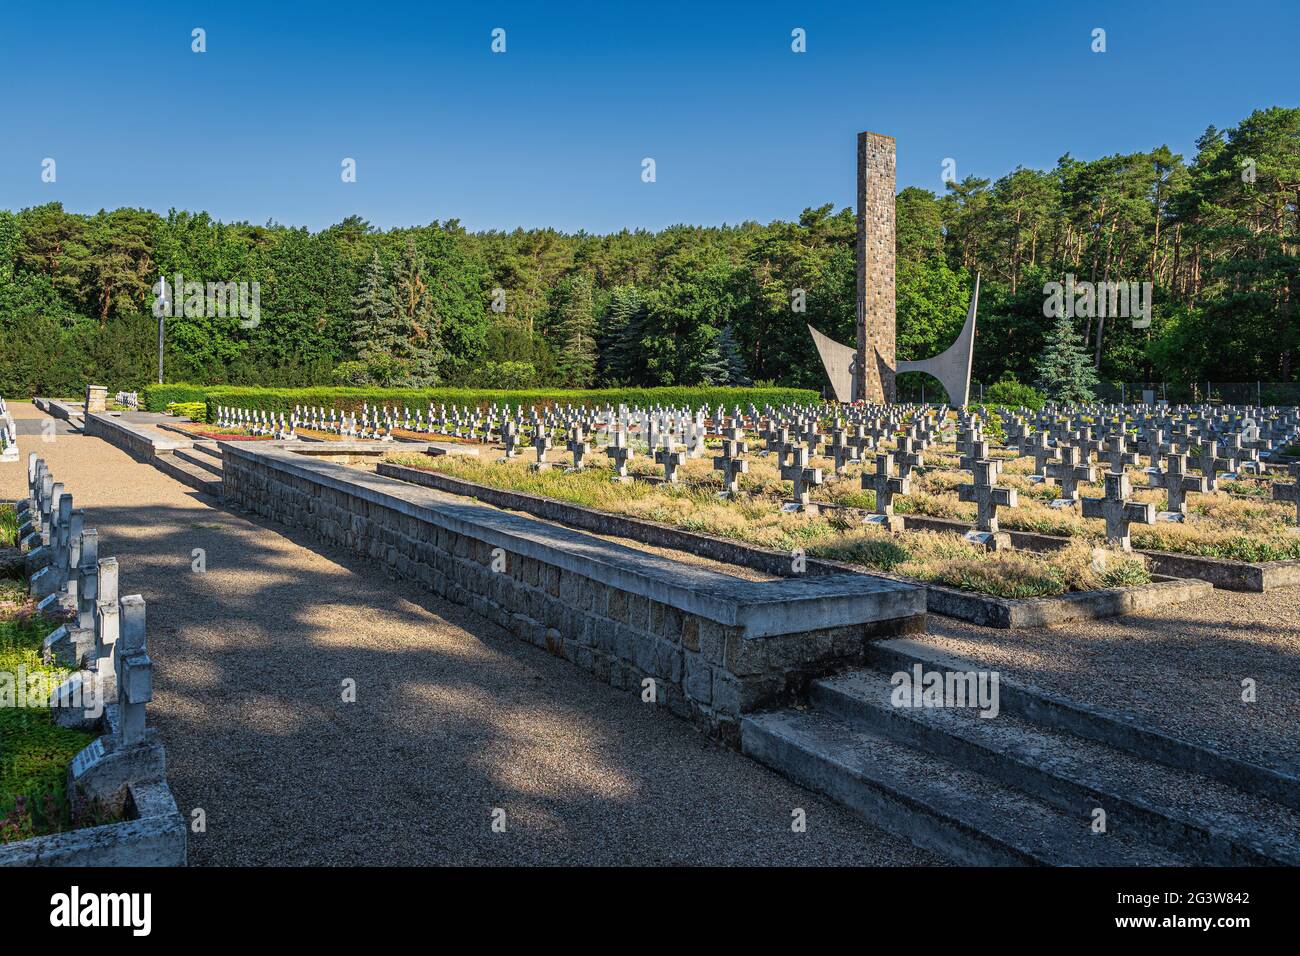 Monument et rangées de tombes. Cimetière militaire des soldats tombés de la 1ère Armée polonaise Banque D'Images